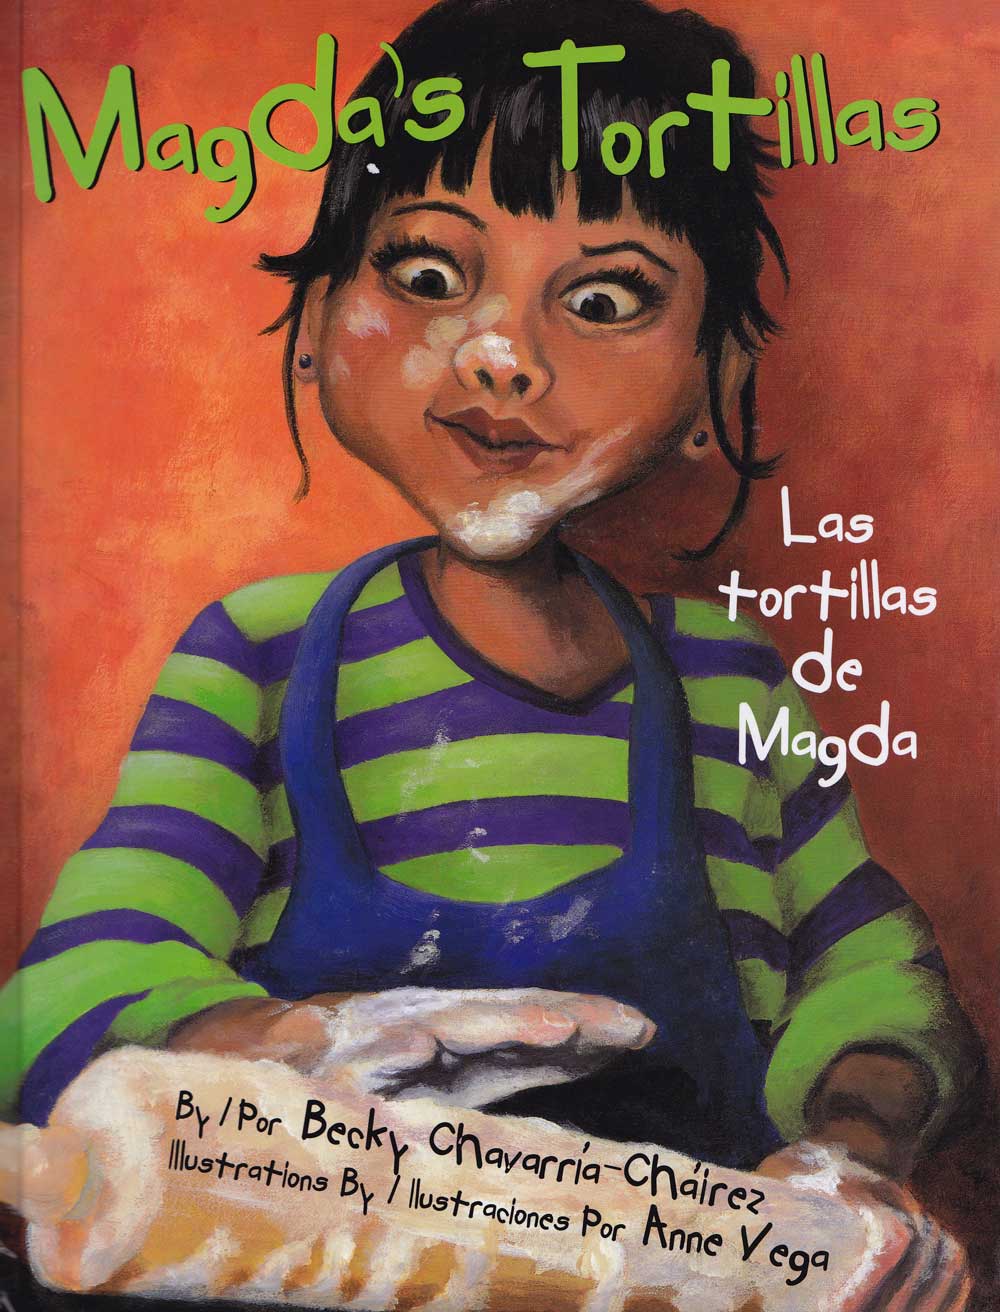 Las tortillas de Magda - Magdas Tortillas, Del Sol Books